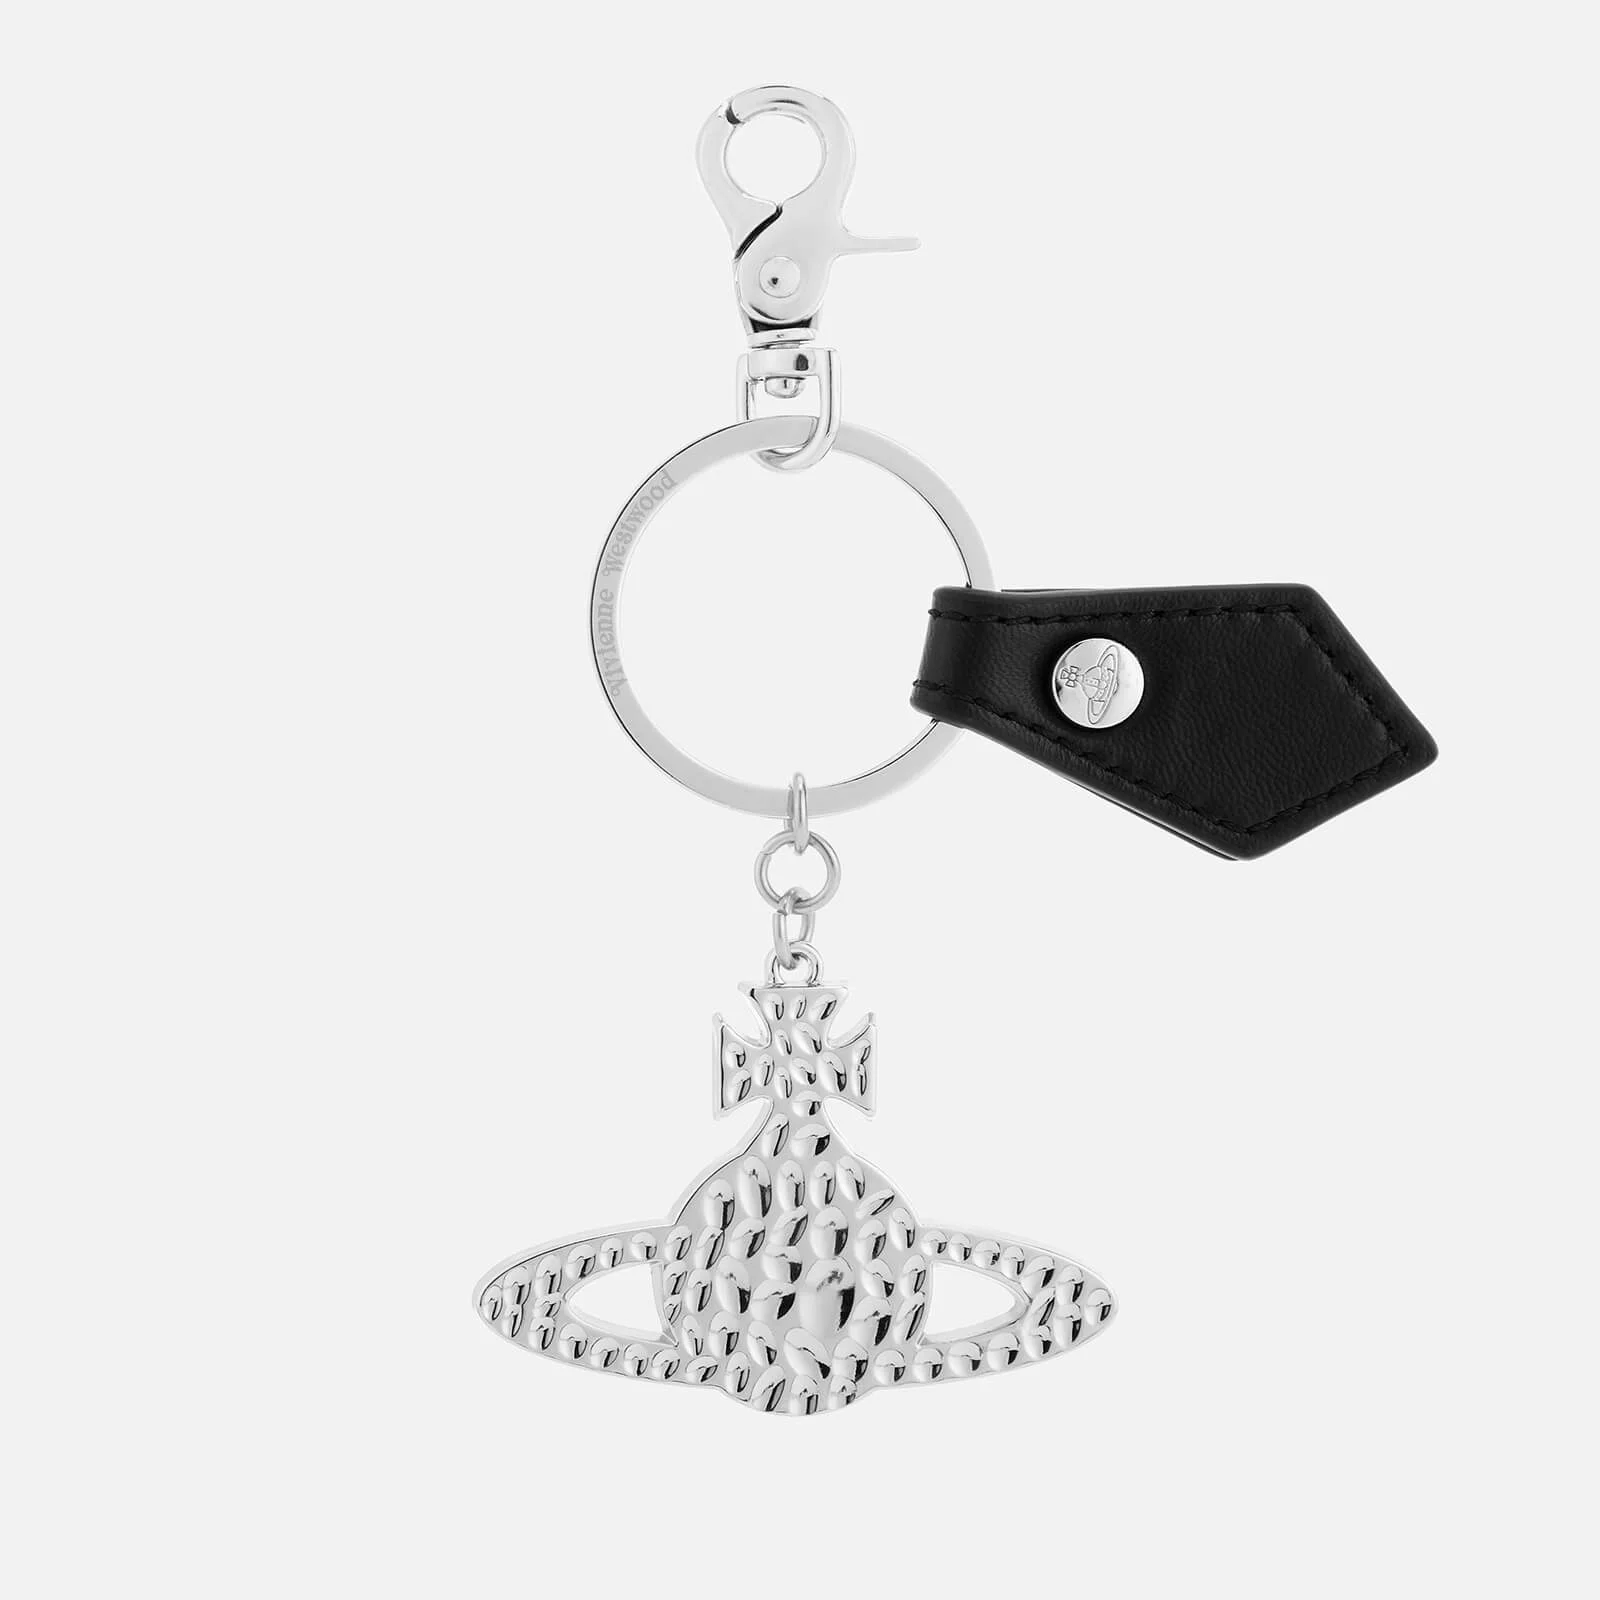 Vivienne Westwood Men's Hammered Orb Keyring - Silver/Black Image 1